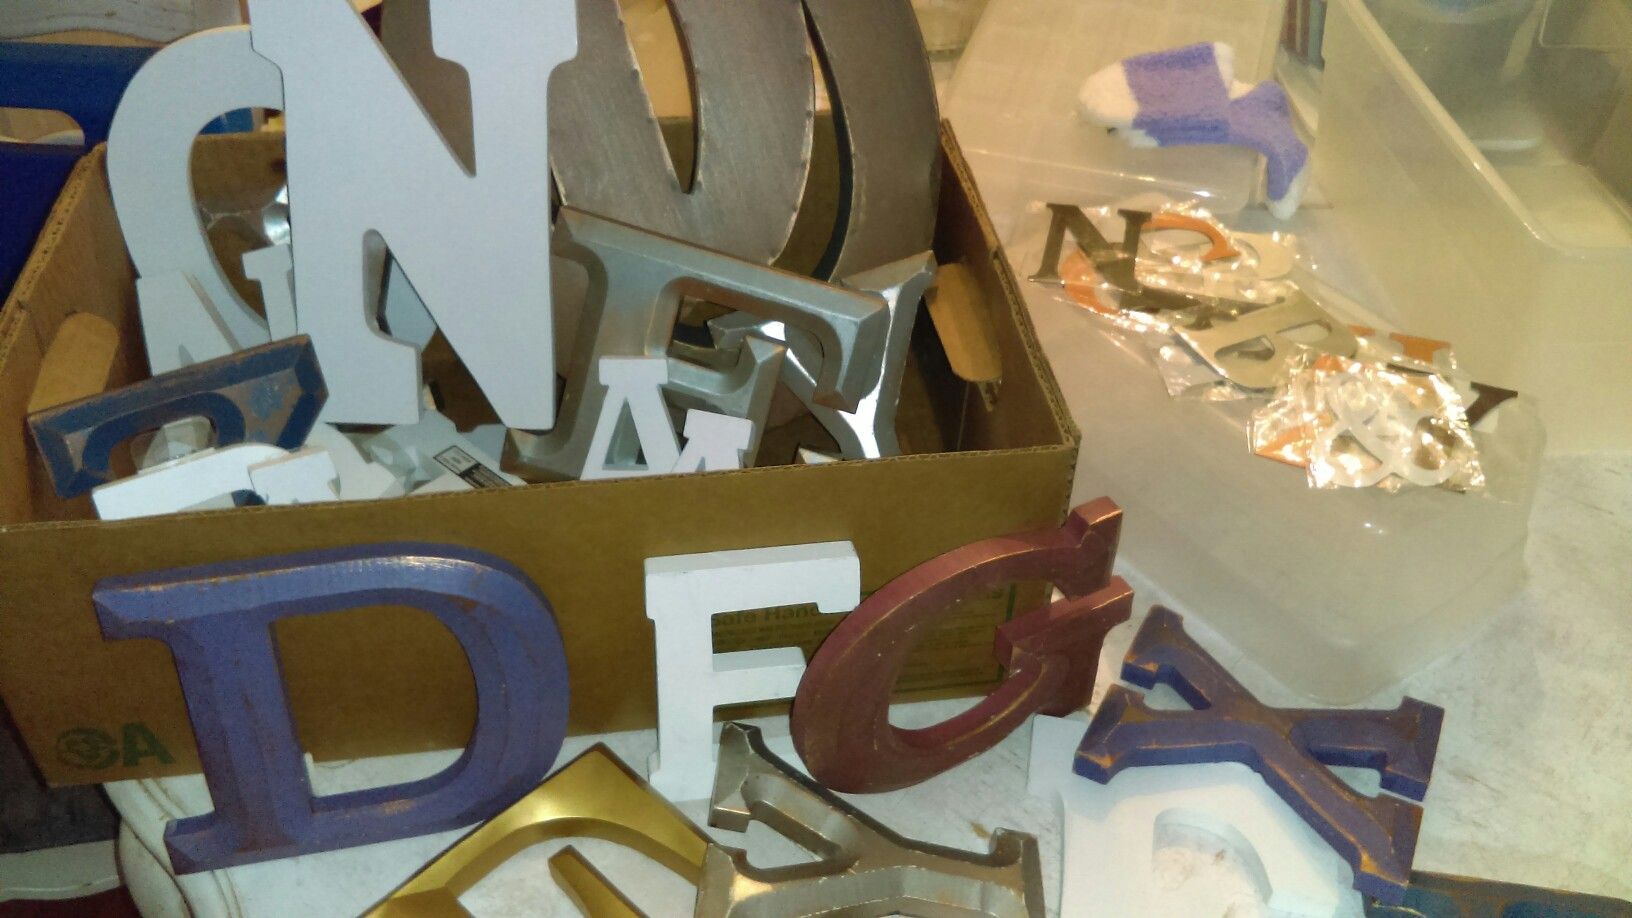 Fun Decorative letters